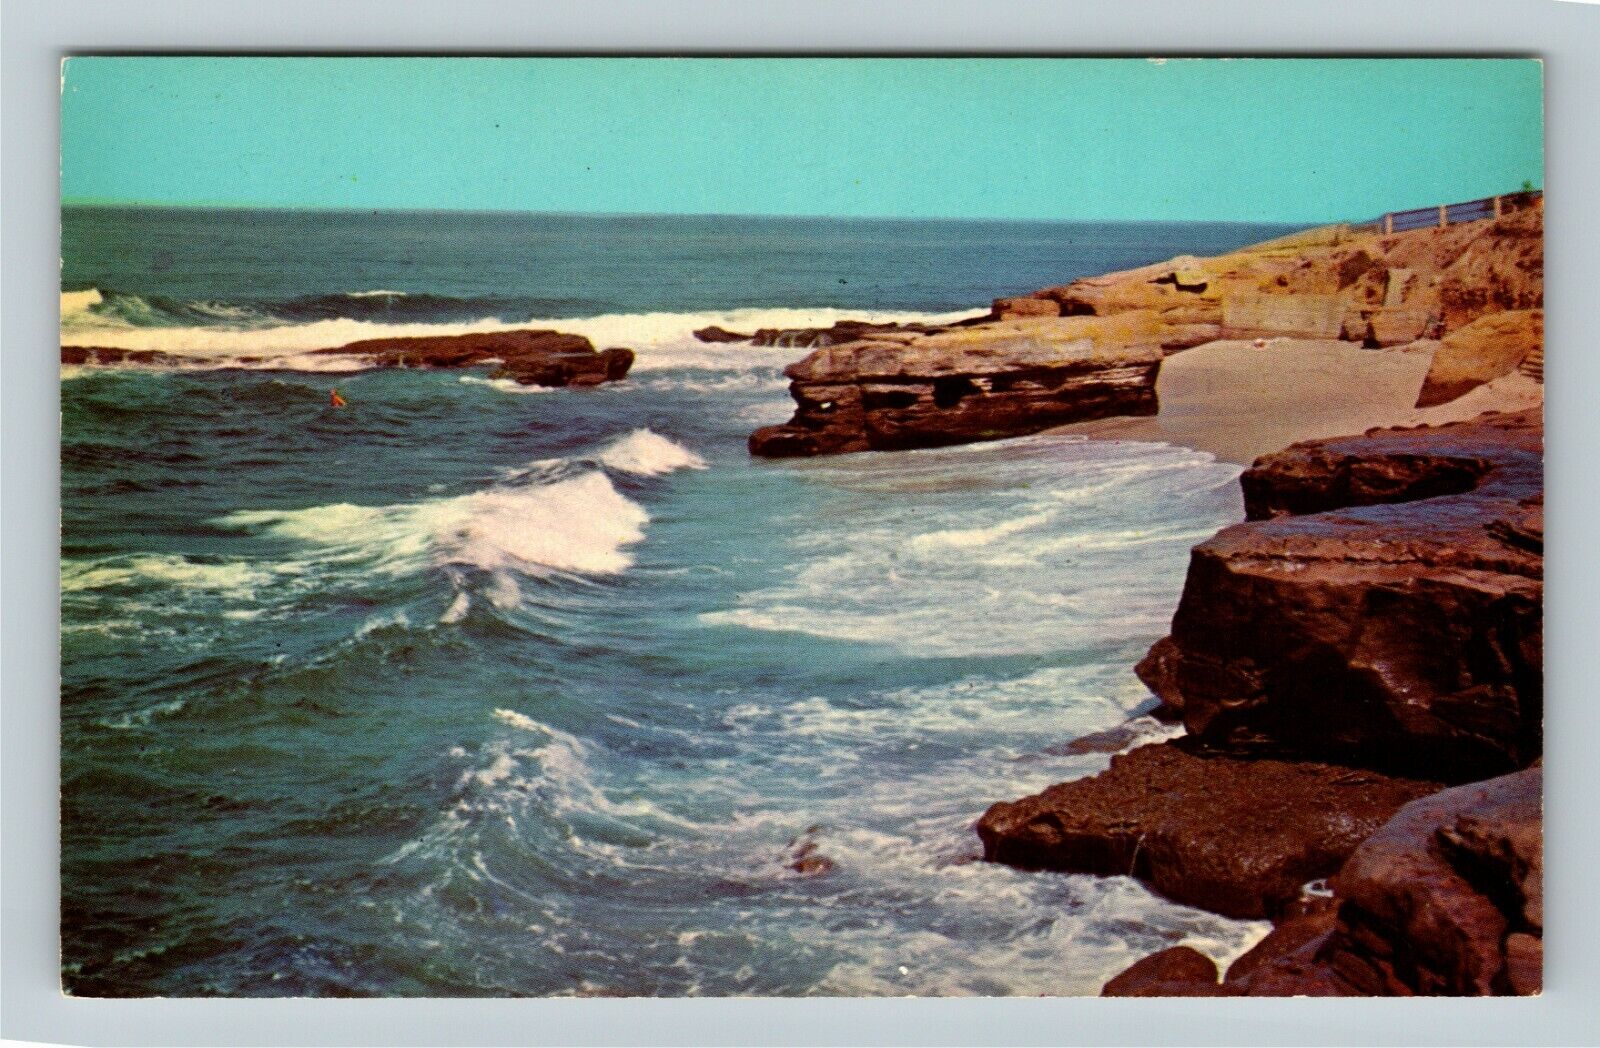 La Jola CA-California, Rugged Shoreline, Ocean Views, Vintage Postcard